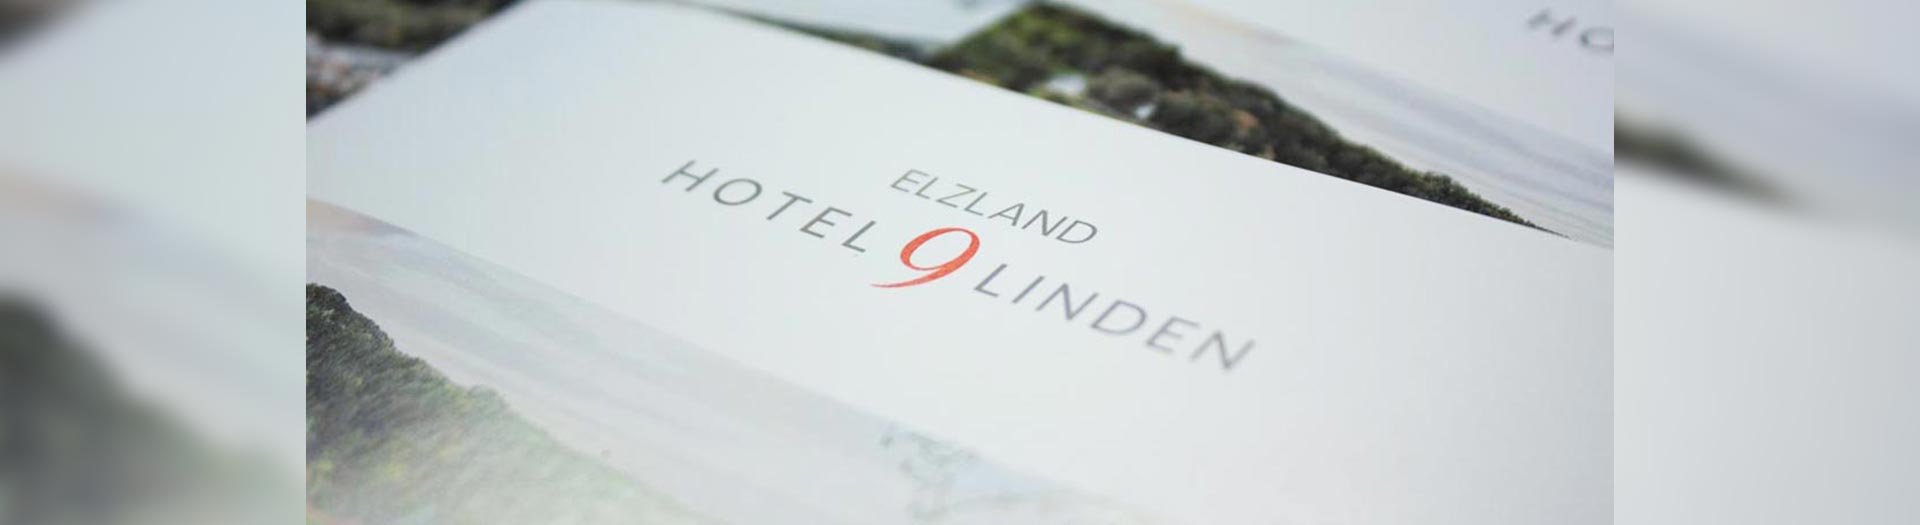 CD ElzLand Hotel 9 Linden - tp werbeagentur